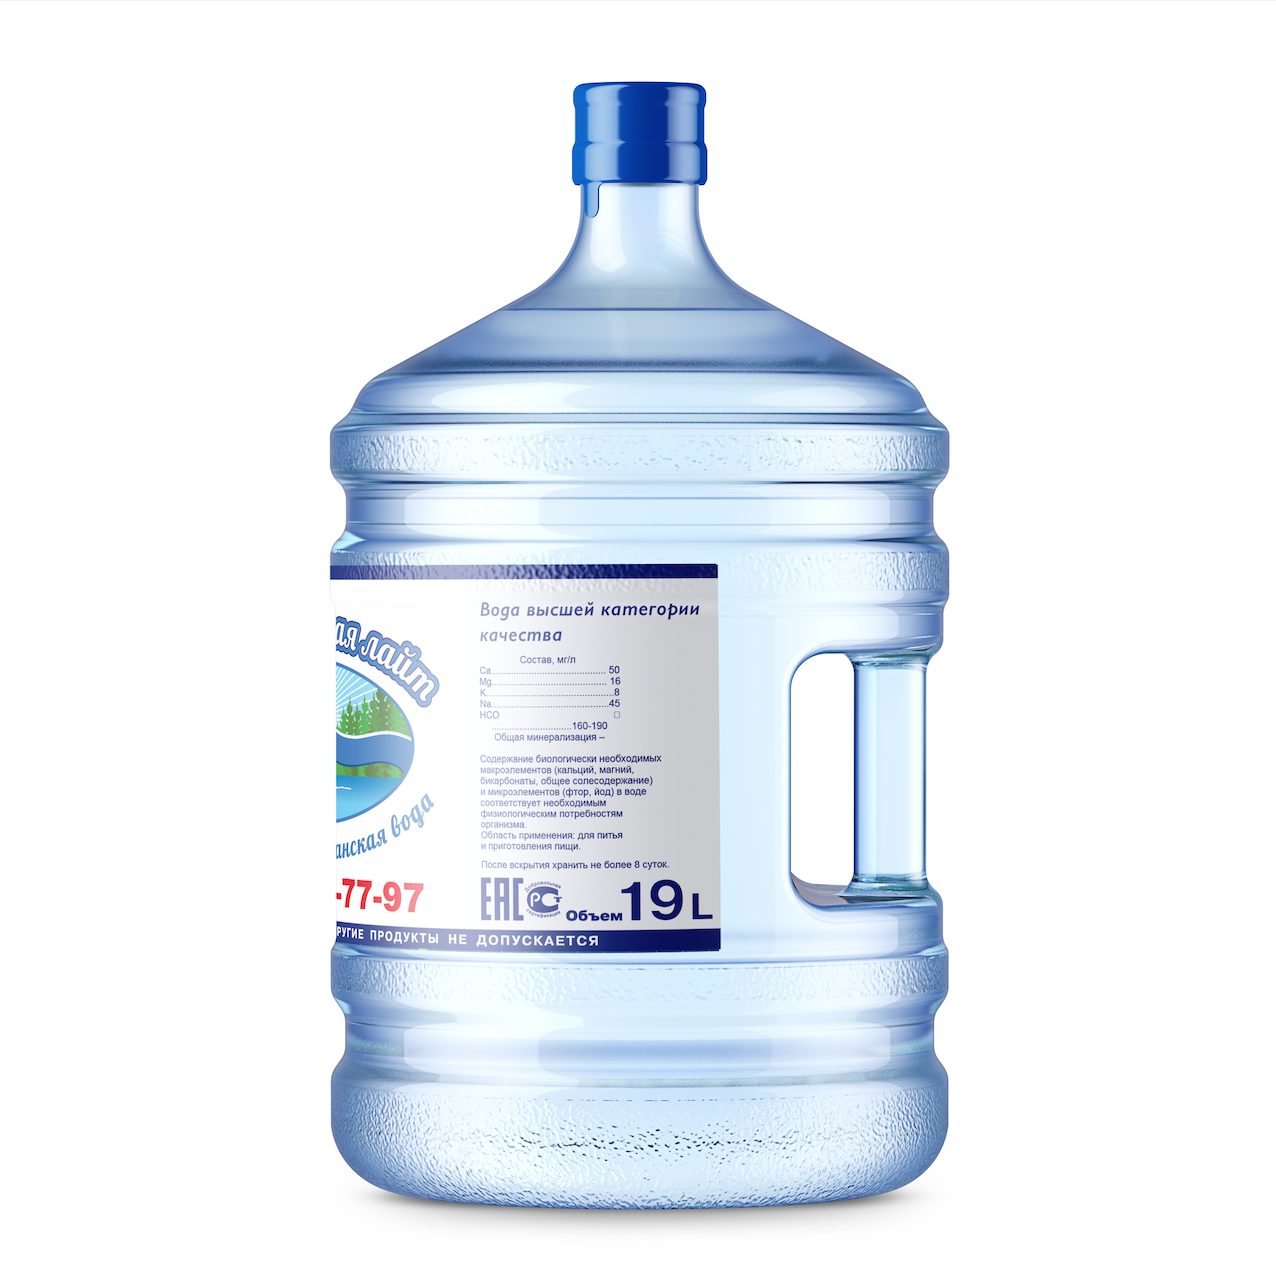 Вода 19 литров отзывы